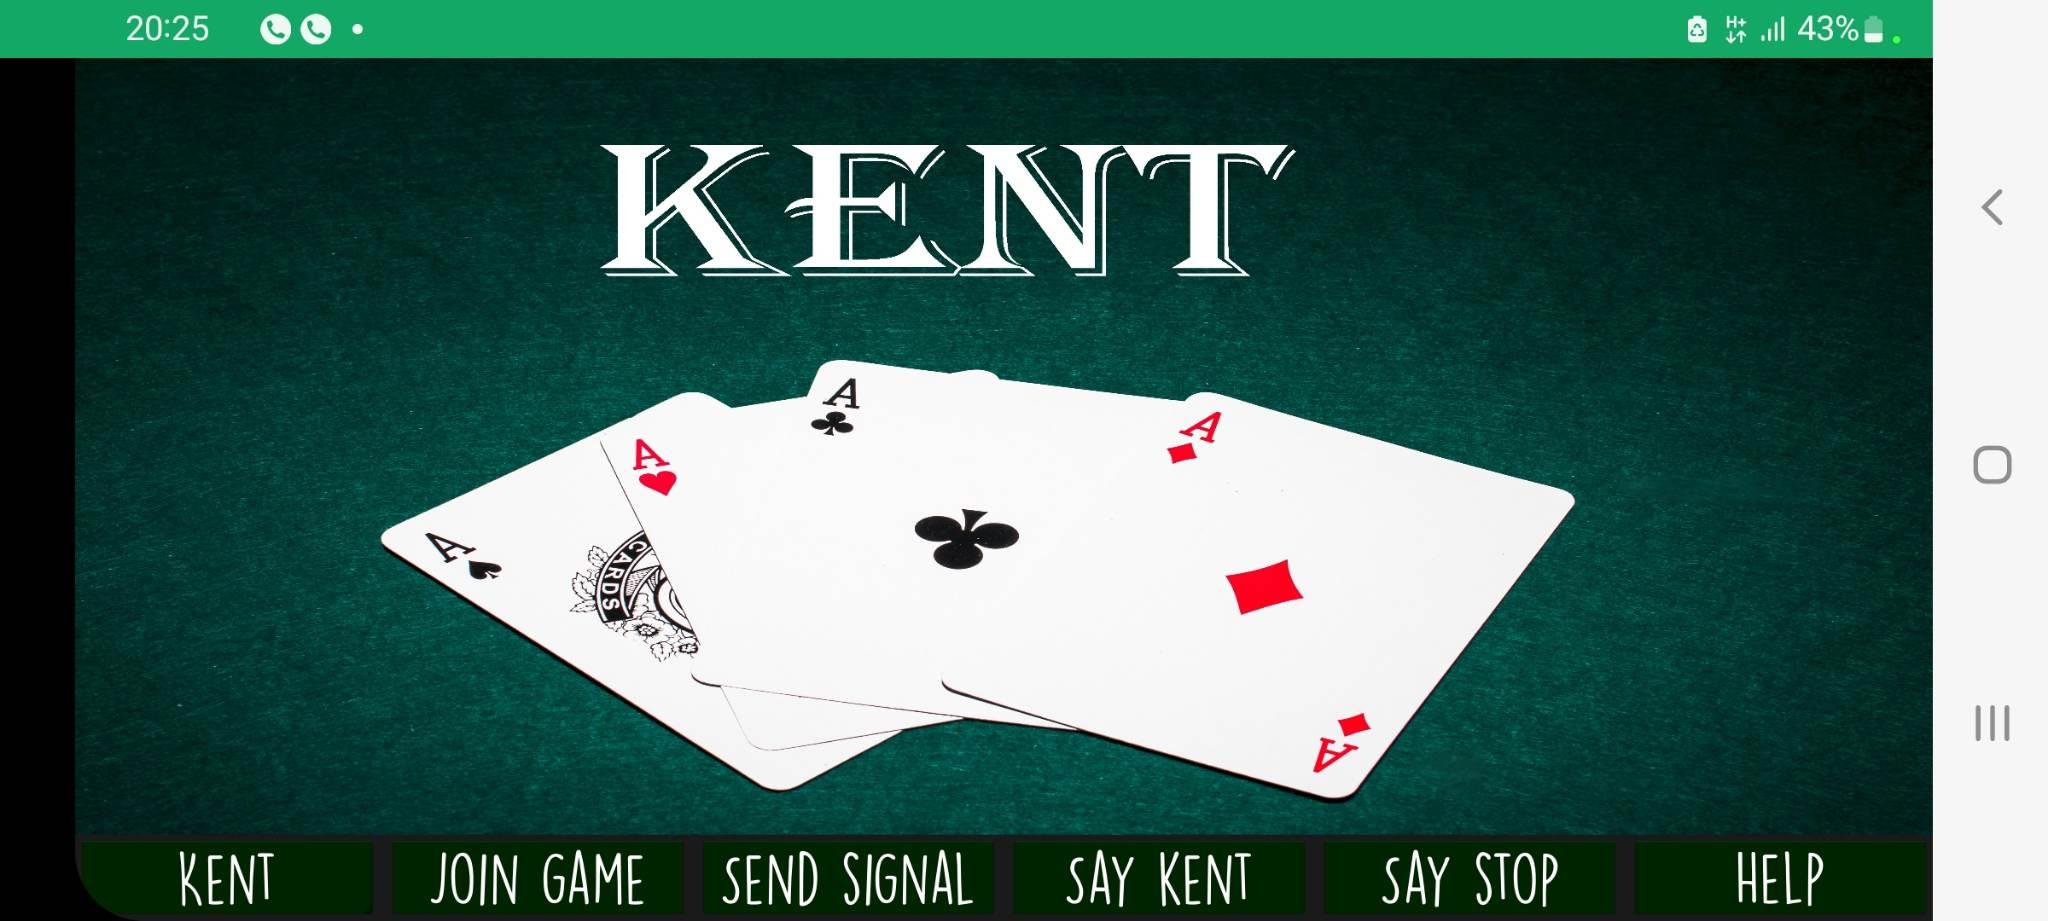 Kent casino играть kent kazino info. Кенты в игре. Кент карточная игра.